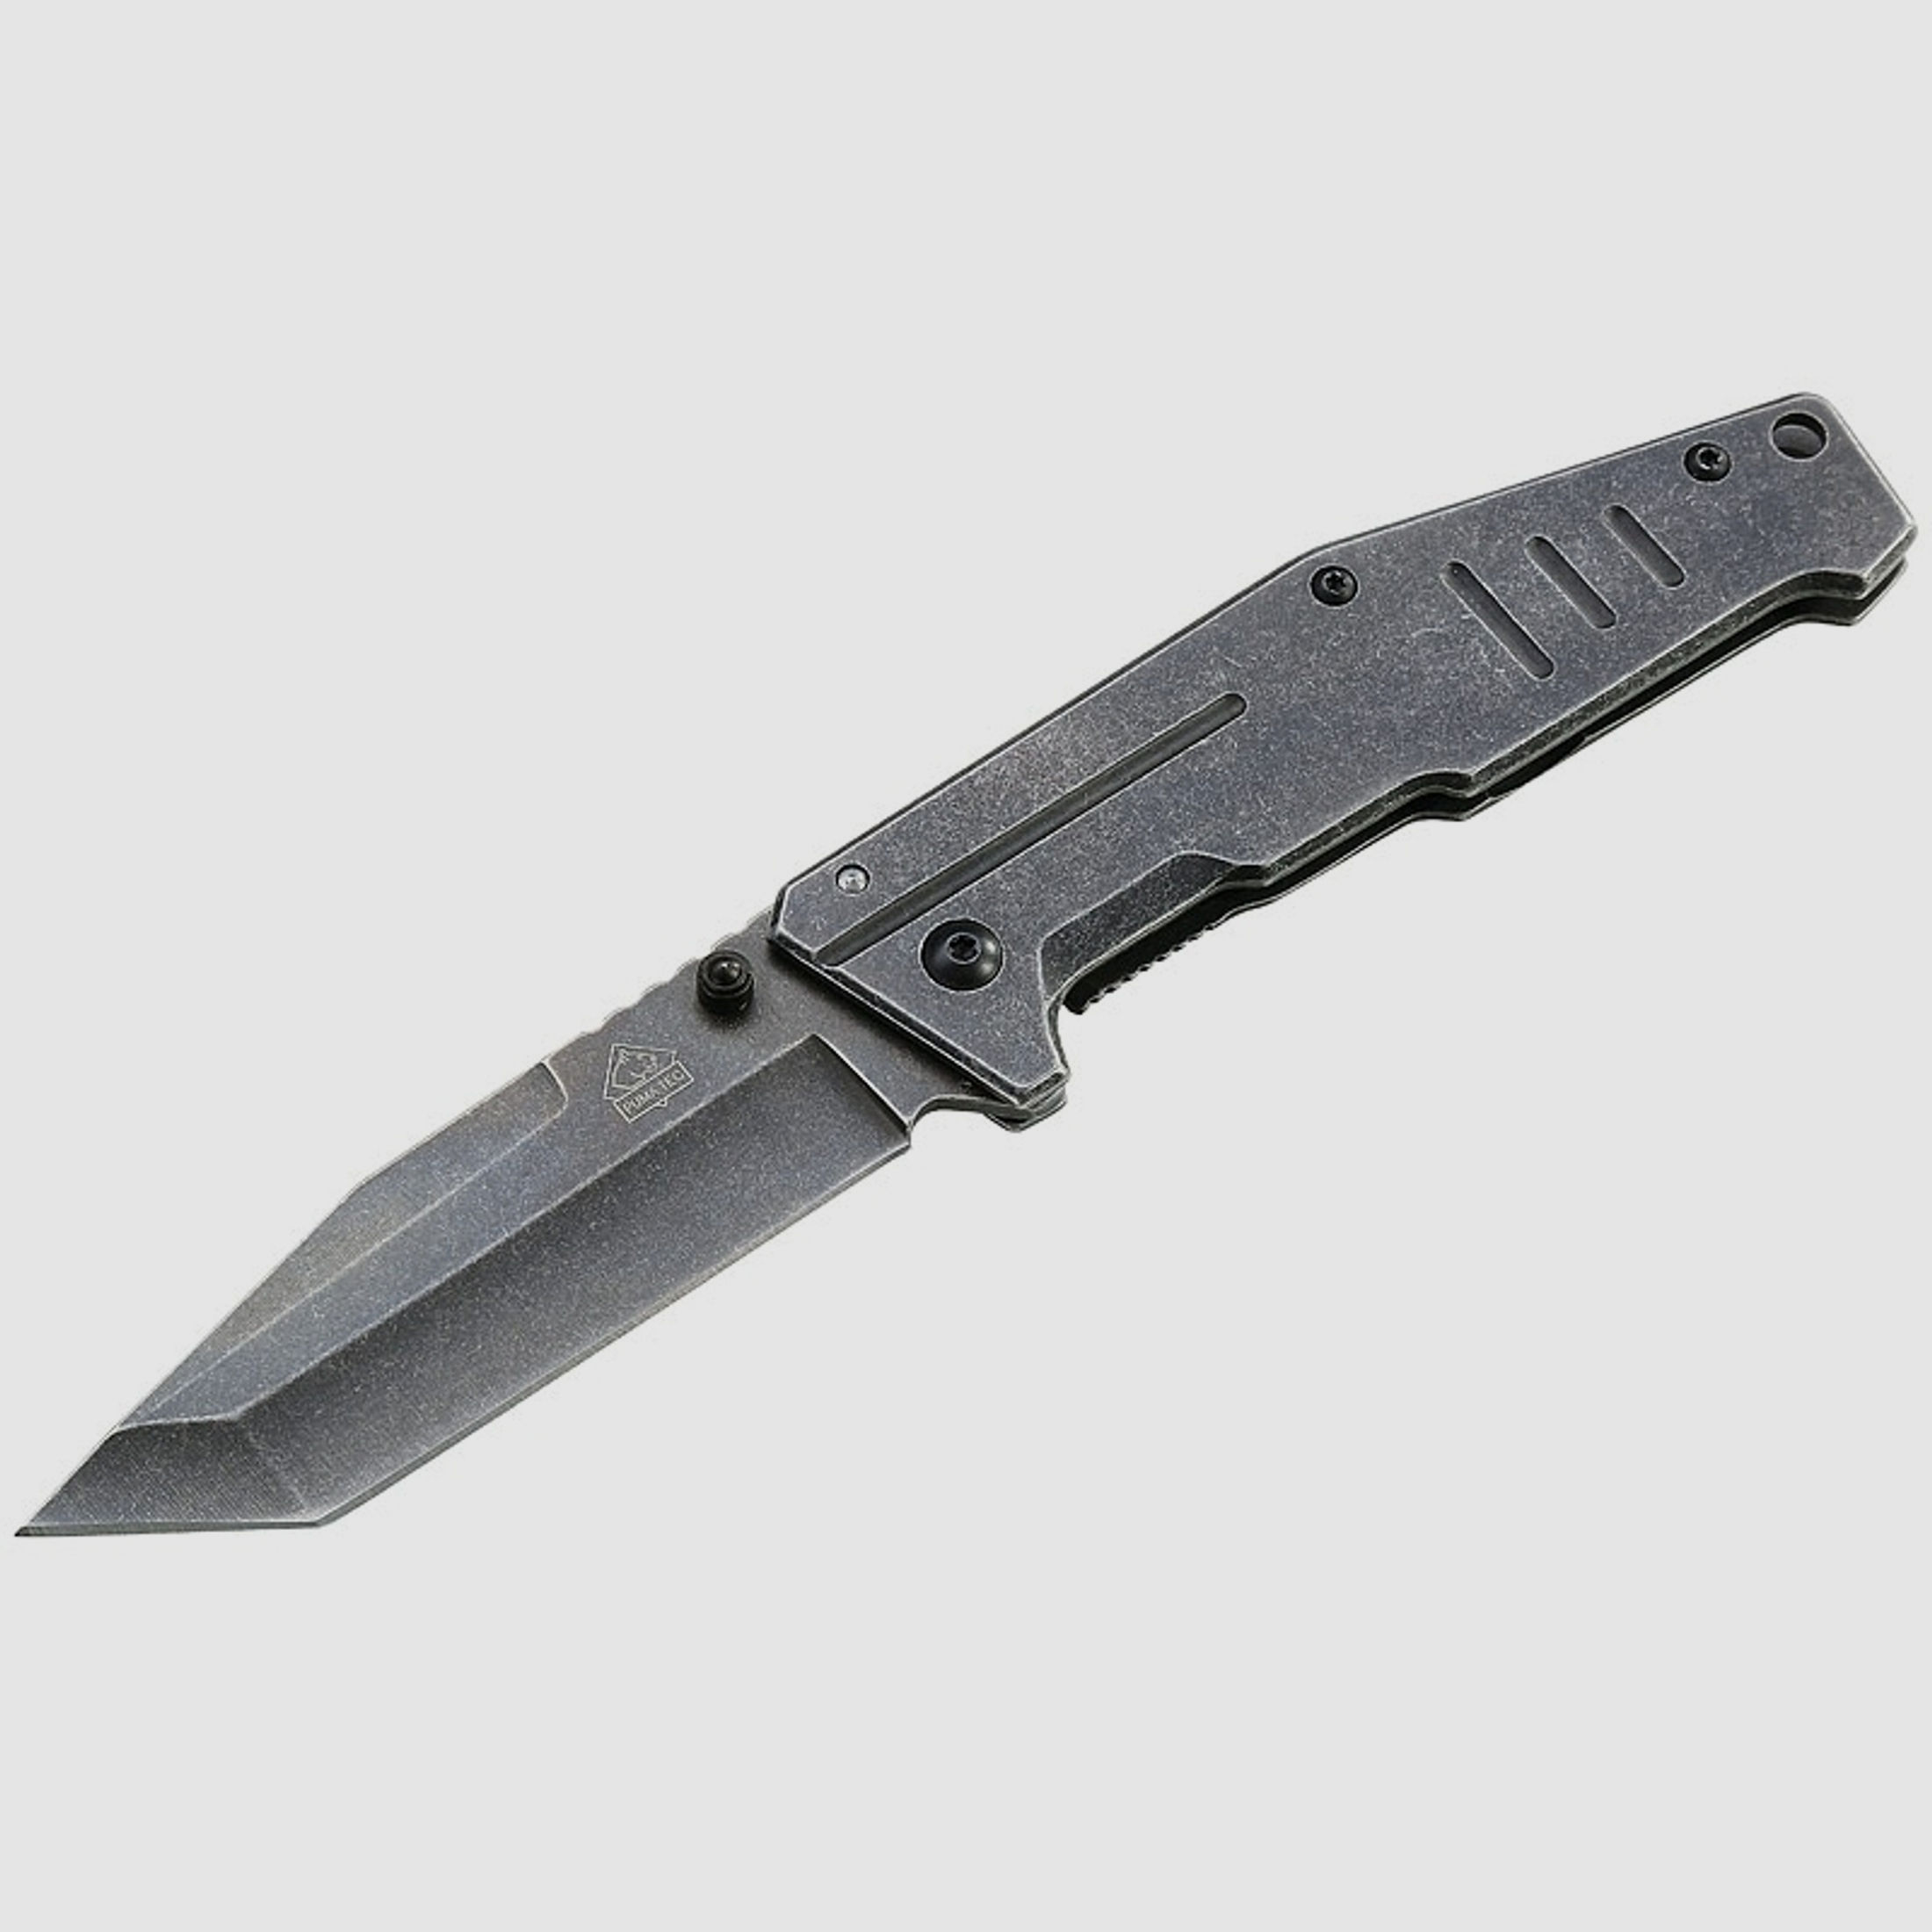 Puma TEC Einhandmesser, kantiges Messer, Frame Lock, Stonewashed-Finisch, Clip